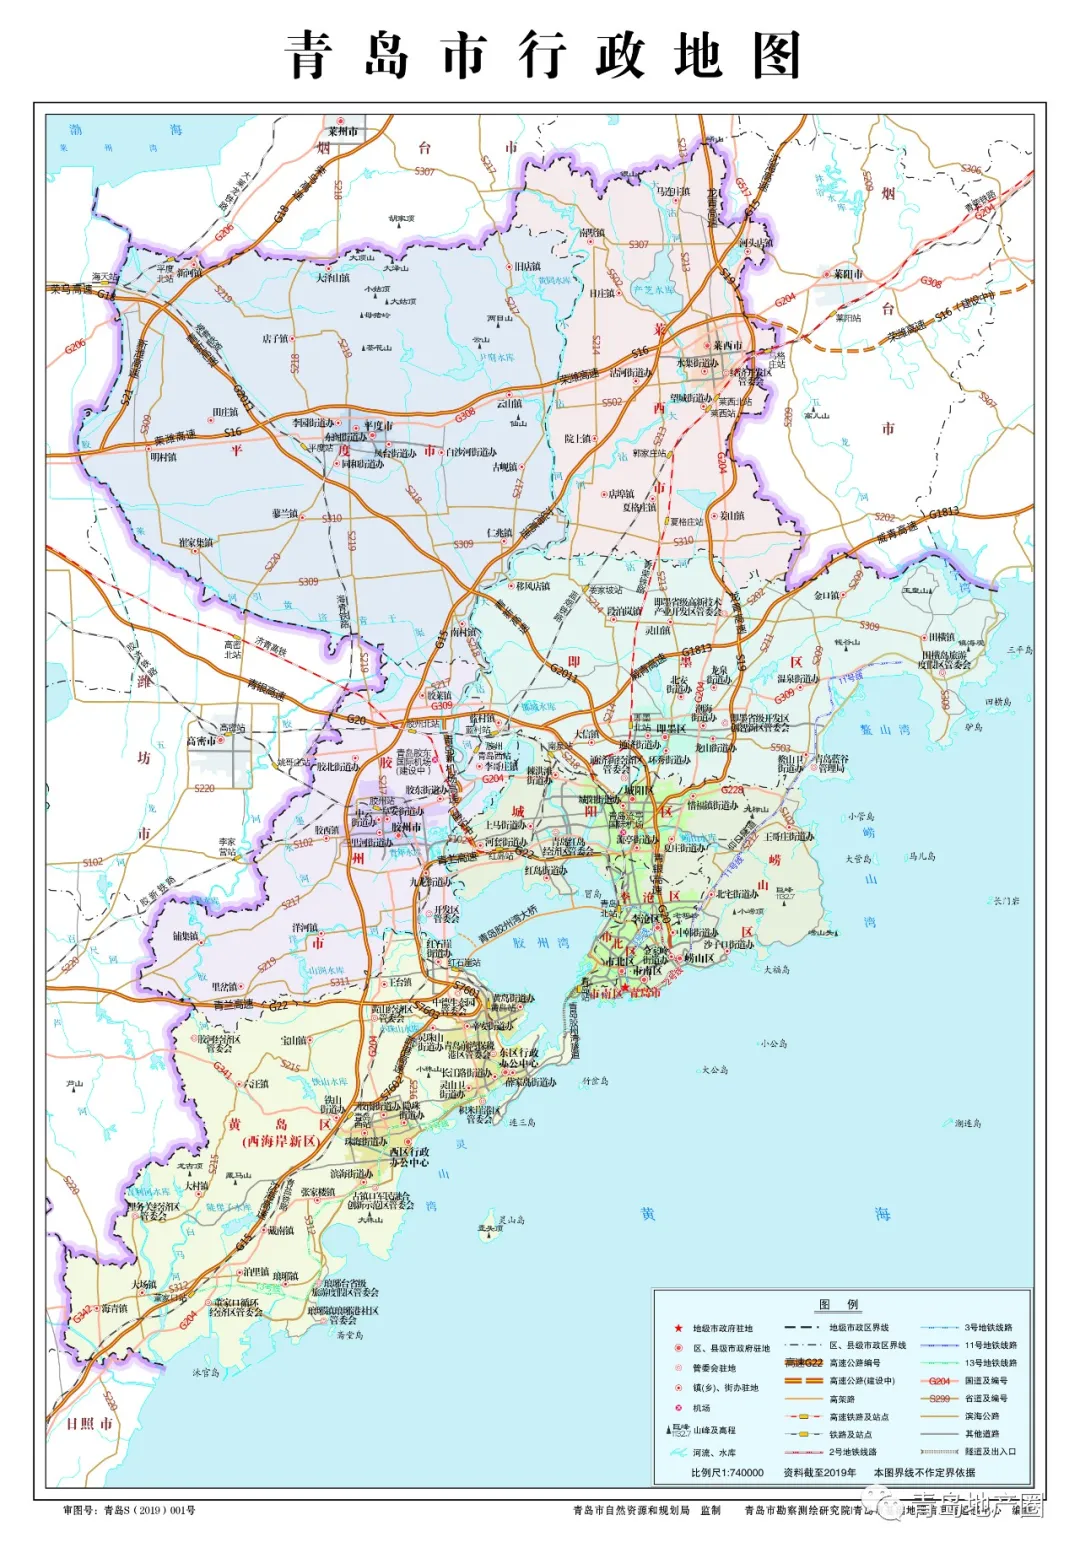 最新!城阳区行政地图已更新含高新,还有青岛市及其他区市地图